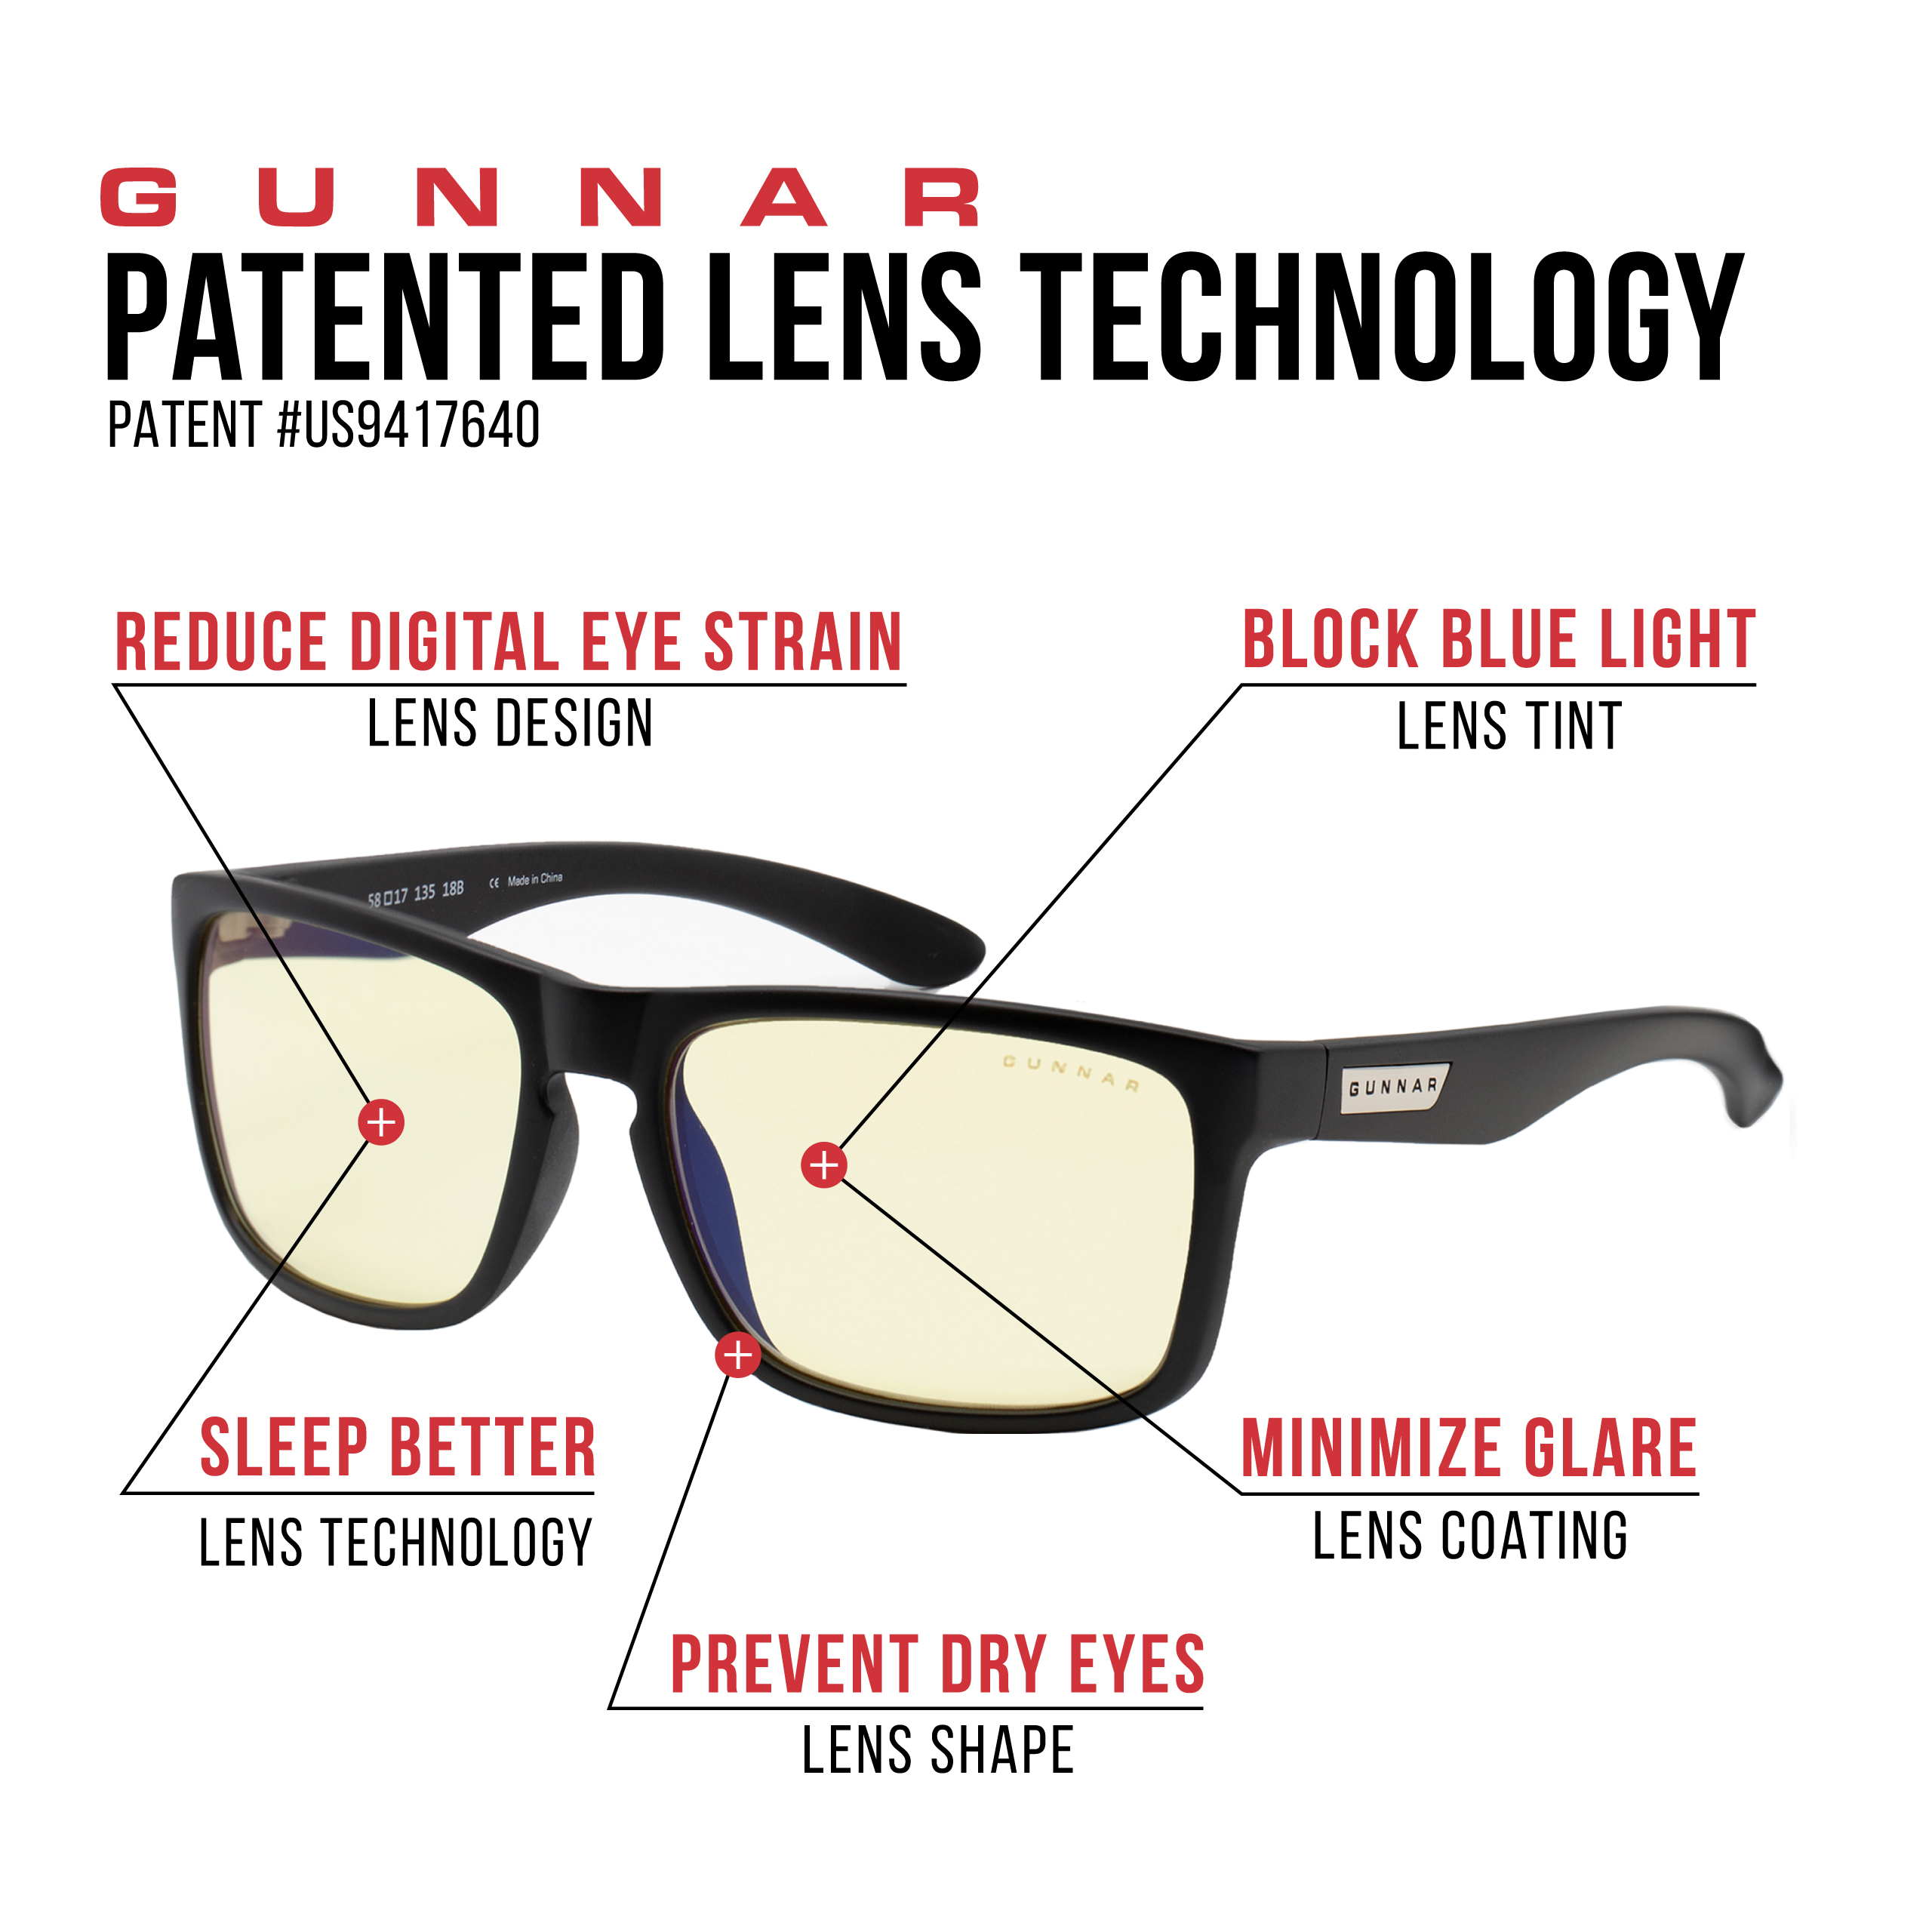 GUNNAR Intercept, Onyx Rahmen, Tönung, Premium, Gaming Blaulichtfilter, Brille Amber UV-Schutz